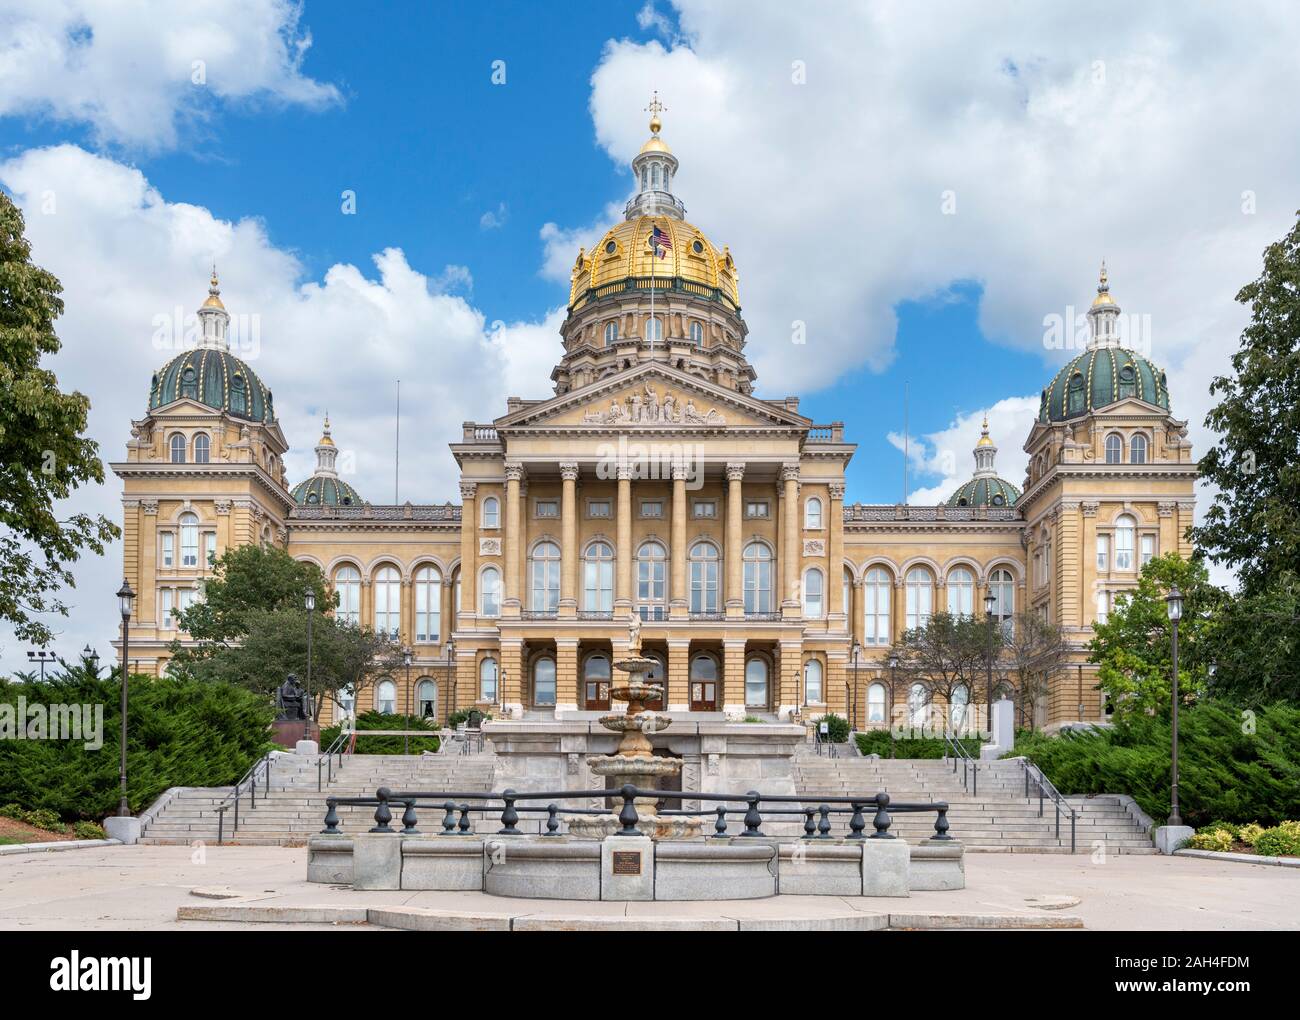 Front of the Iowa State Capitol (Iowa Statehouse), Des Moines, Iowa, USA. Stock Photo